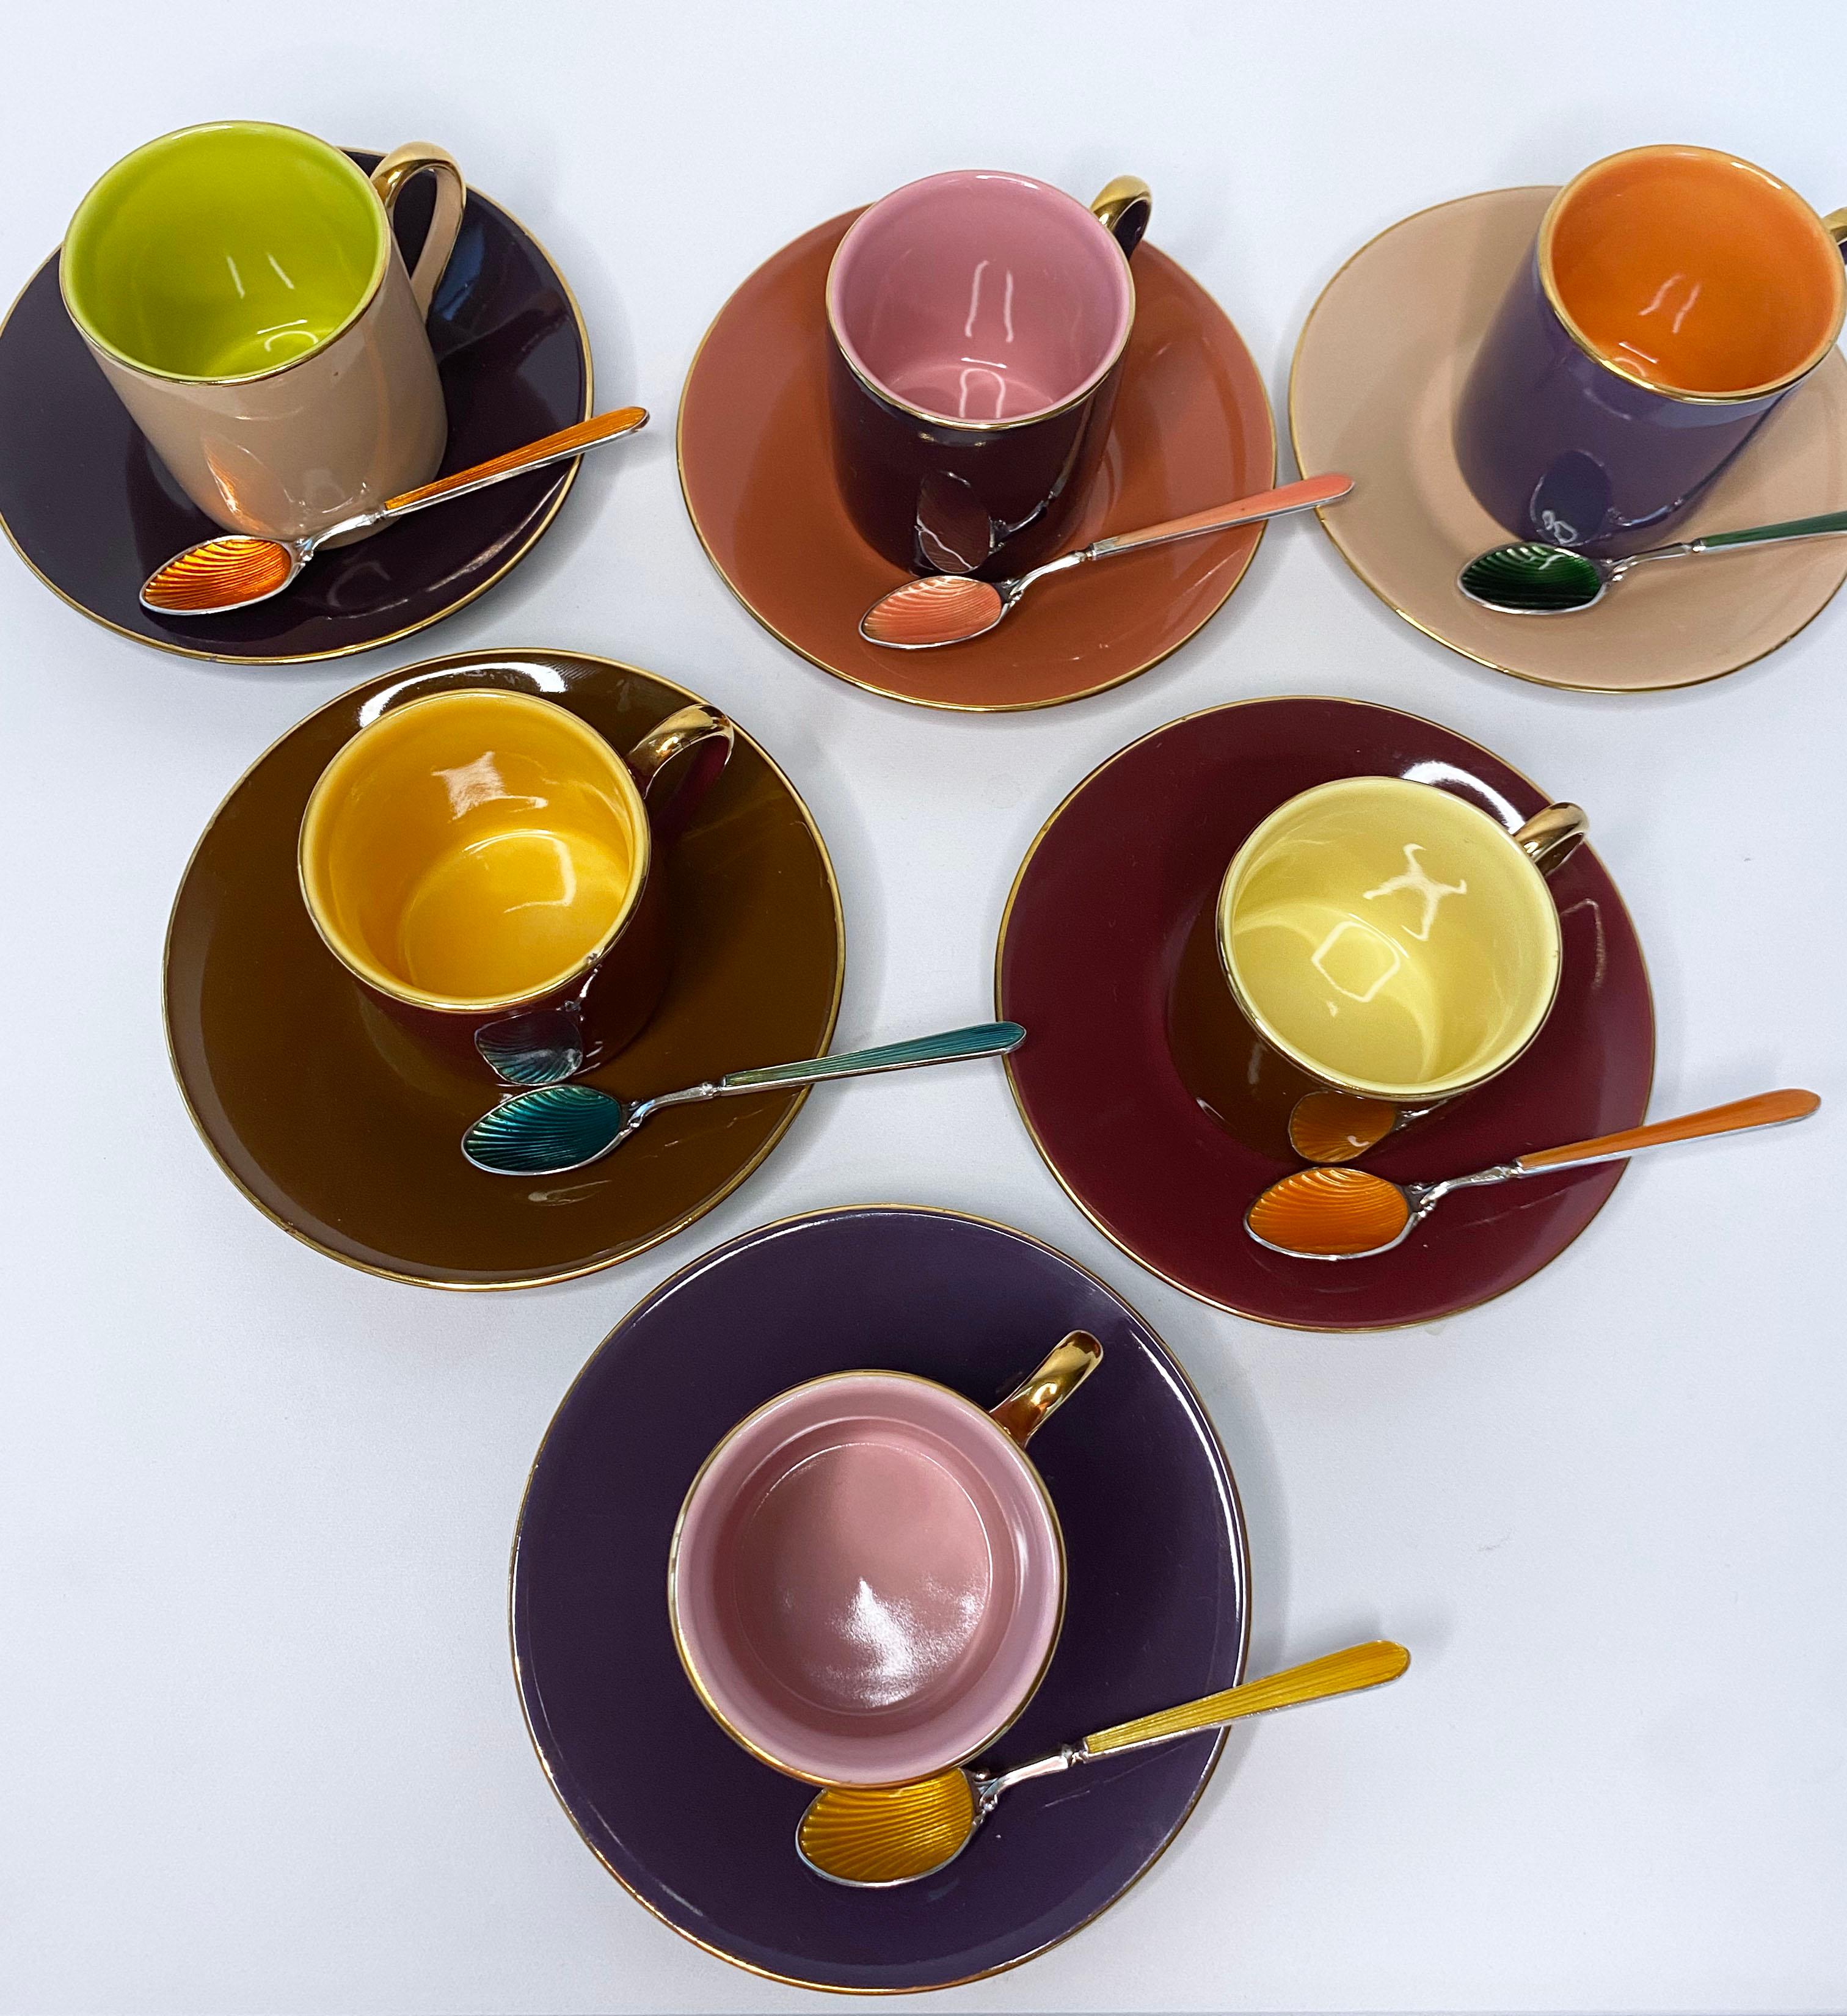 Set de tasses et cuillères à café multicolores à la fois amusant et élégant. Les tasses à café et les assiettes sont vendues par 6 et présentent une belle palette de couleurs chaudes et complémentaires qui s'associent facilement entre elles. Un